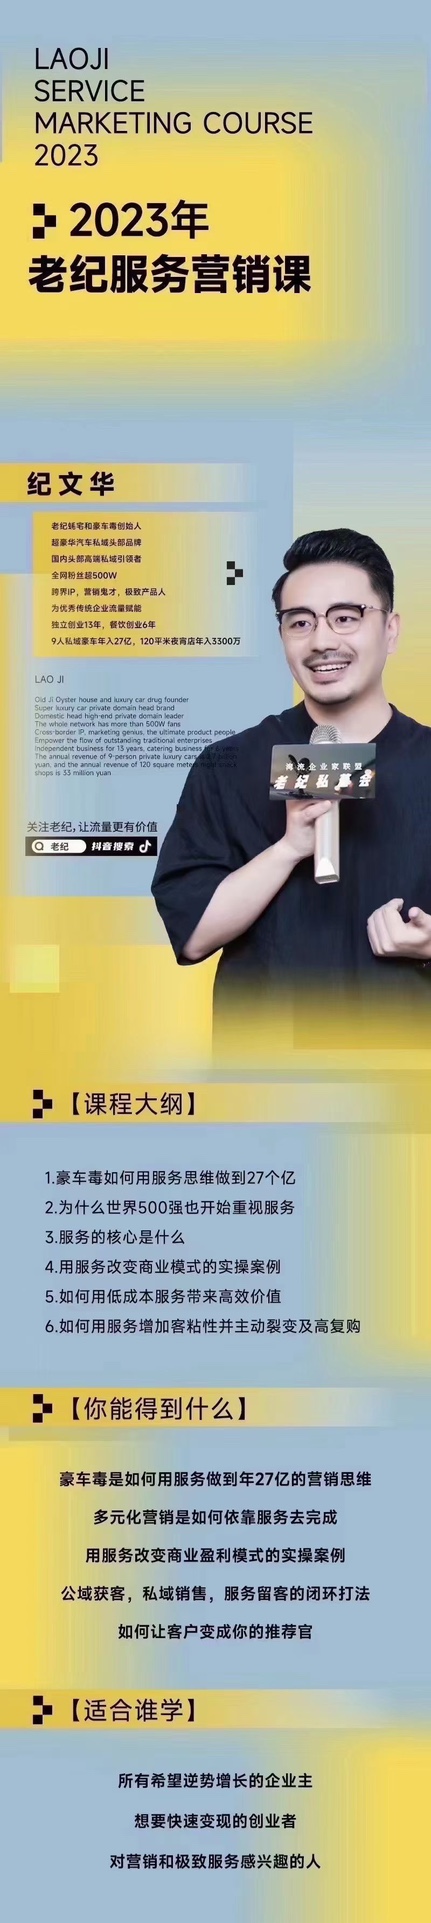 【老纪服务营销课】杭州第五届营销课 传统企业如何通过抖音短视频转型、学习抖音  创始人IP  微信私域 企业品牌服务营销 餐饮  ▪️